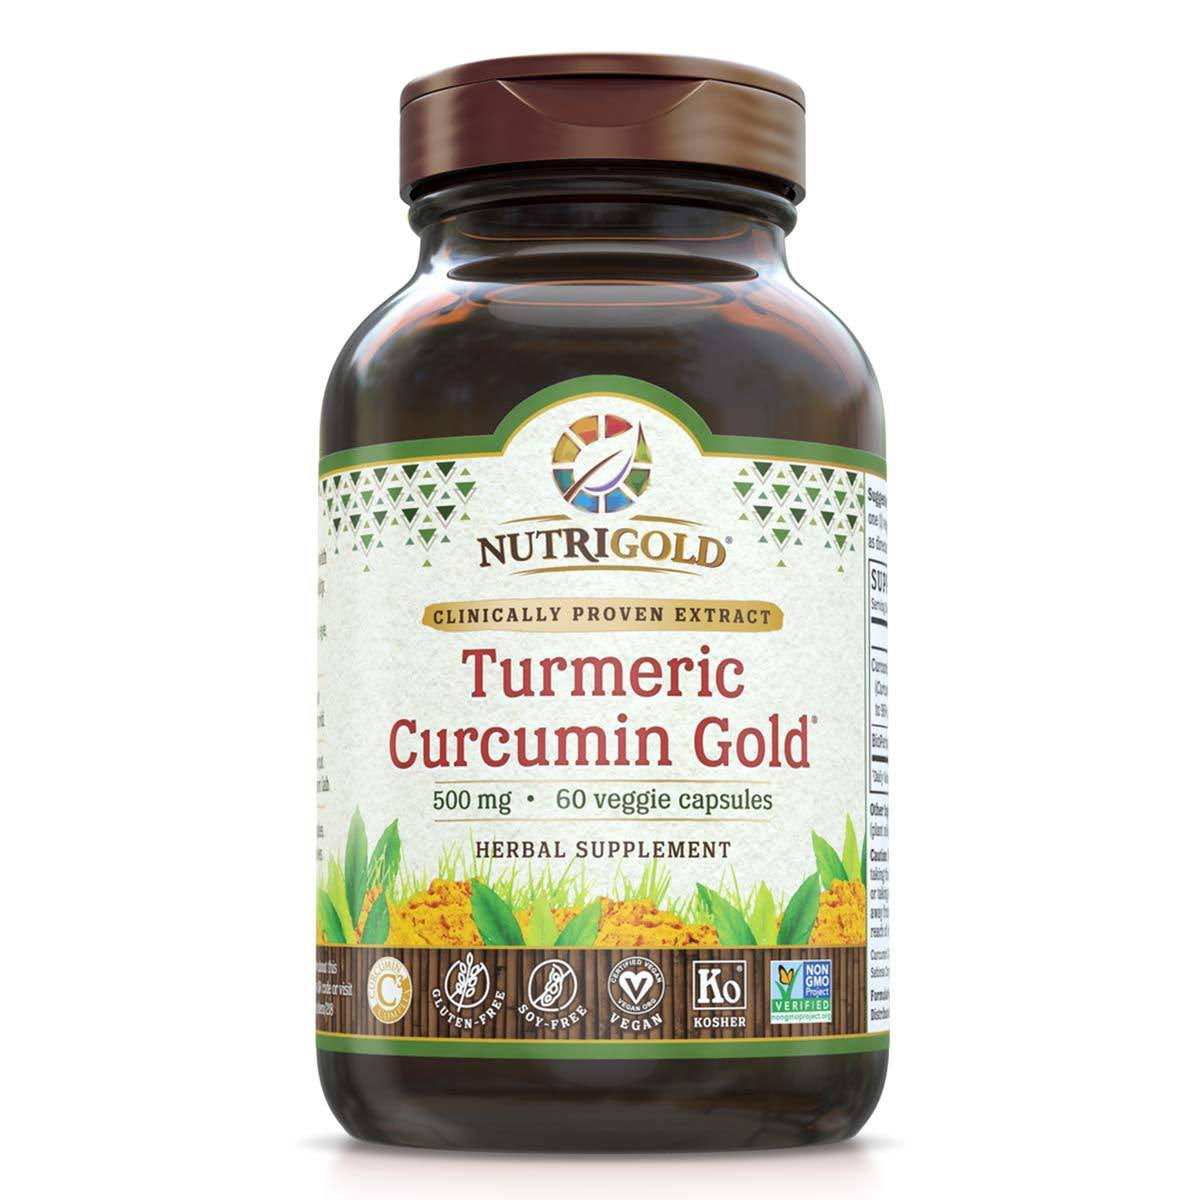 NutriGold Turmeric Curcumin Gold - 500 mg - 60 Vegan Capsules